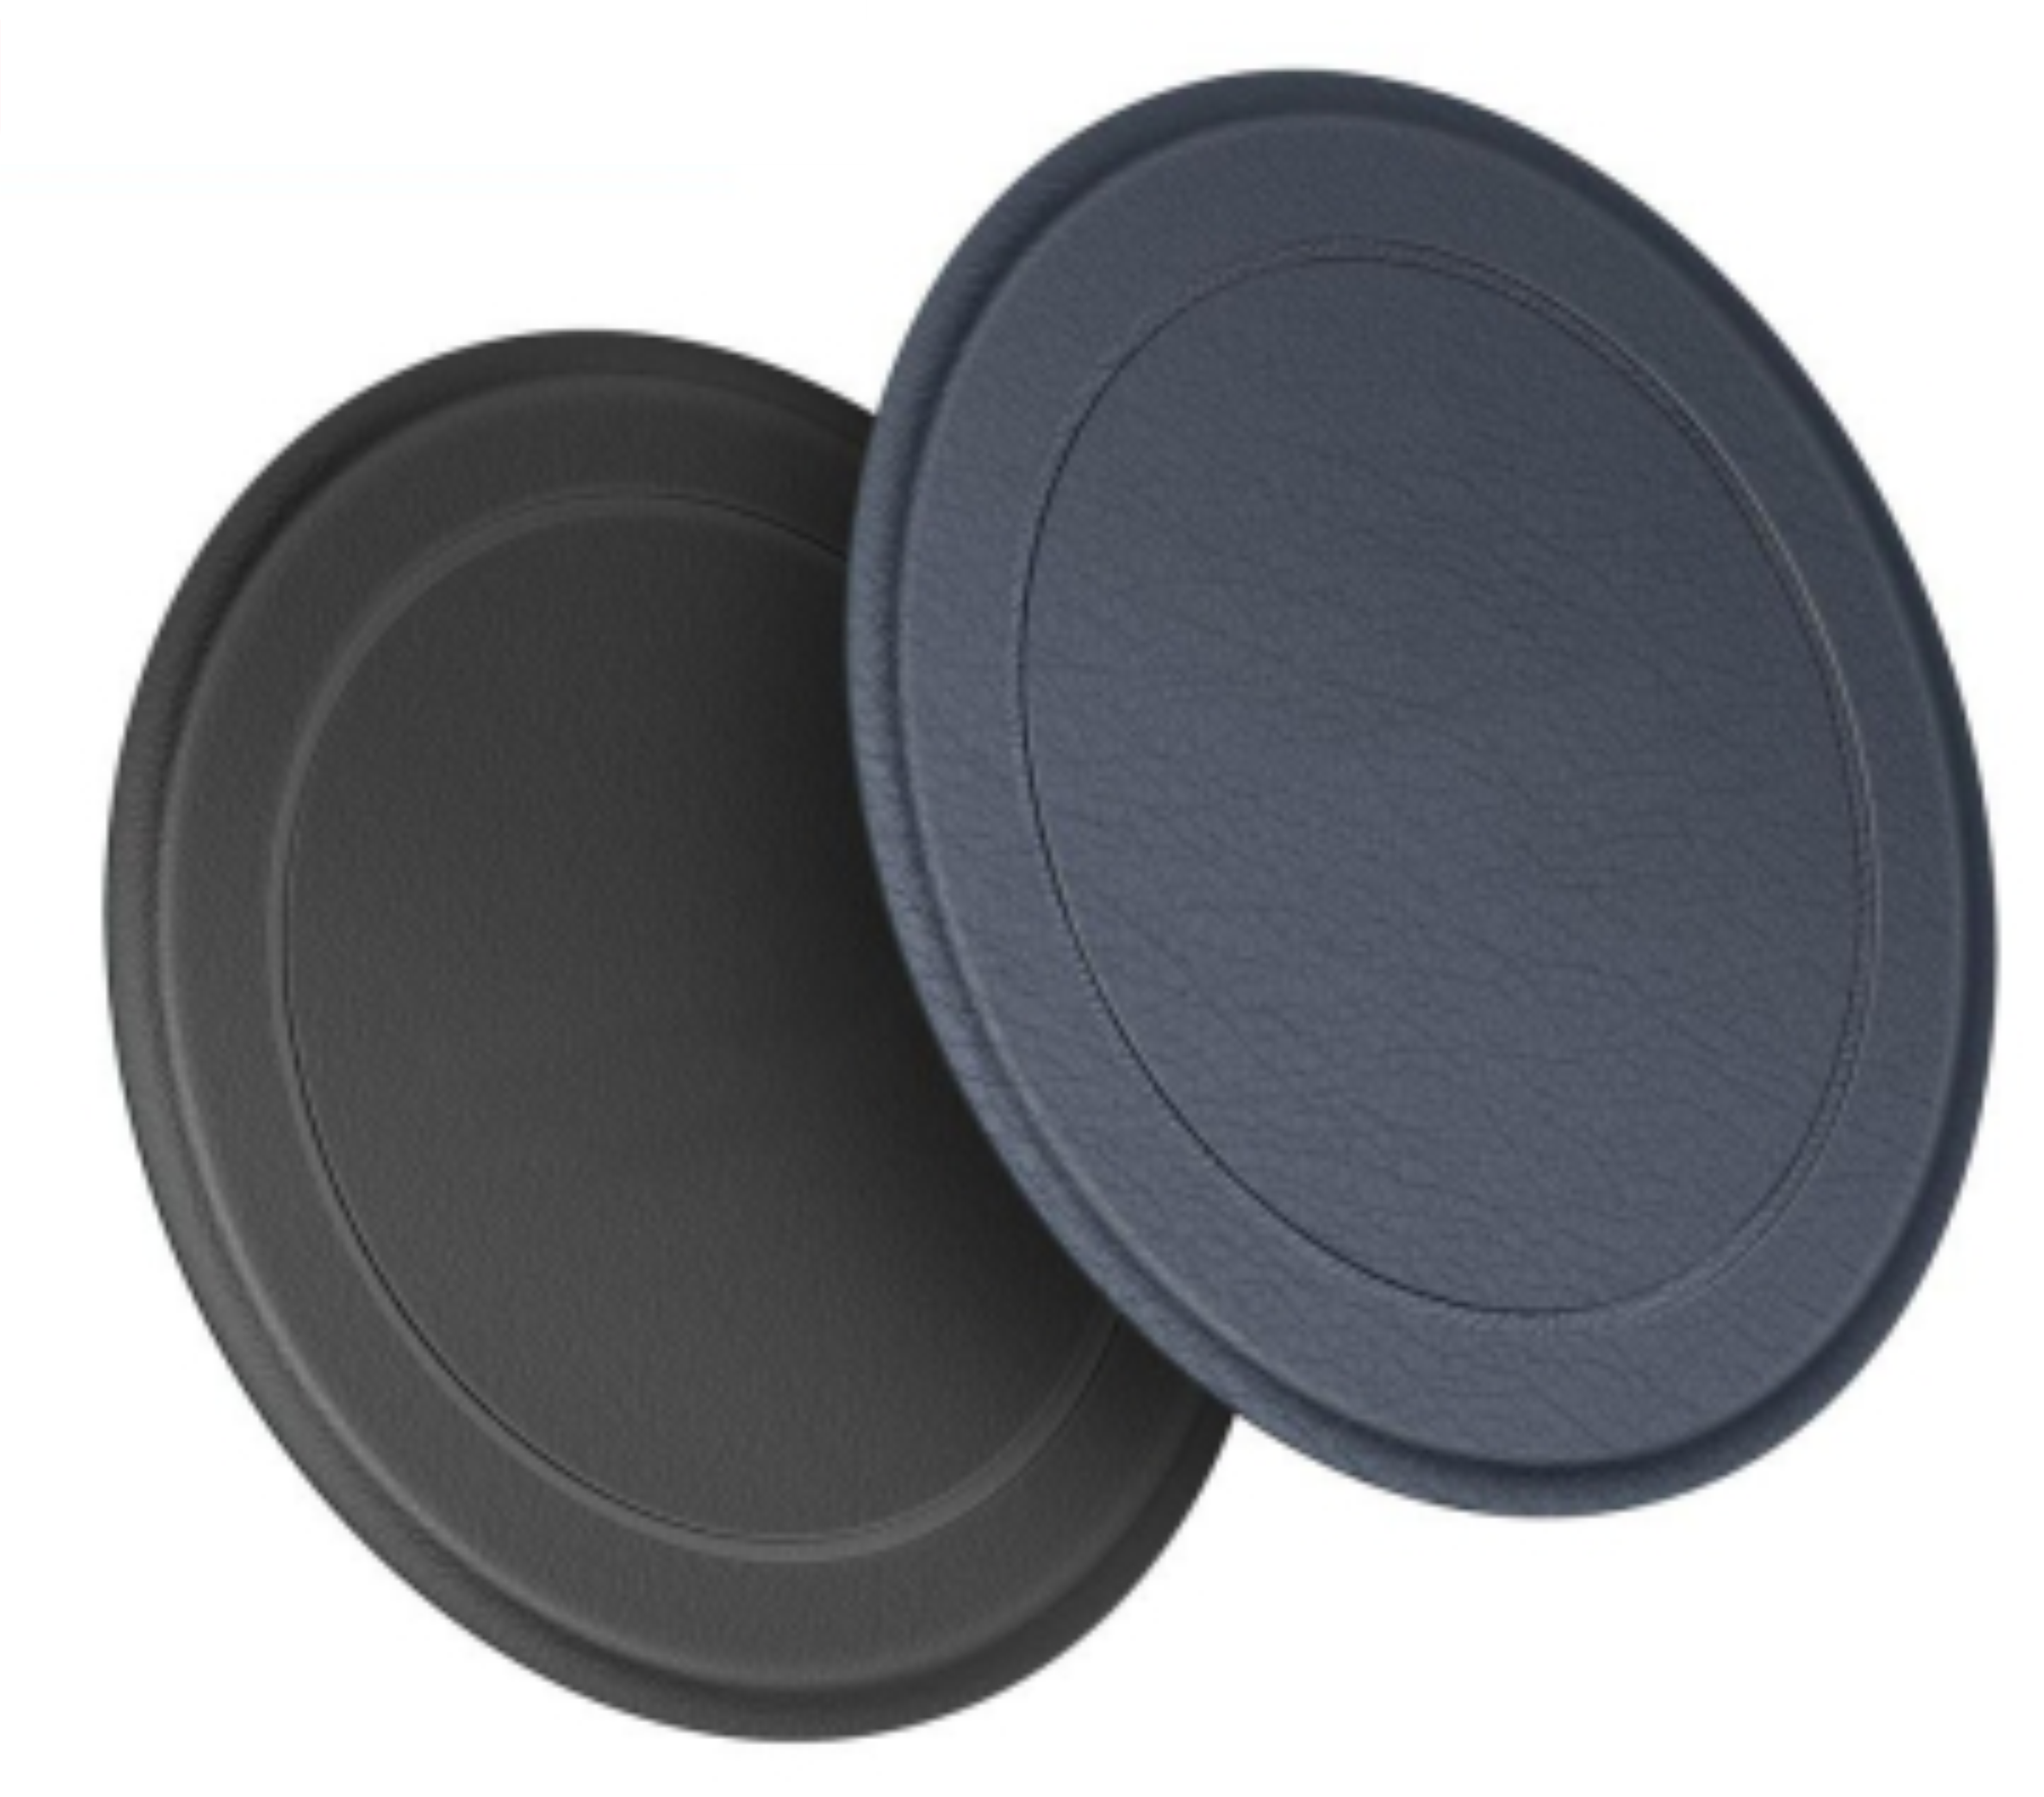 Комплект пластин для магнитного держателя TFN MagLeap, MagSafe, черный